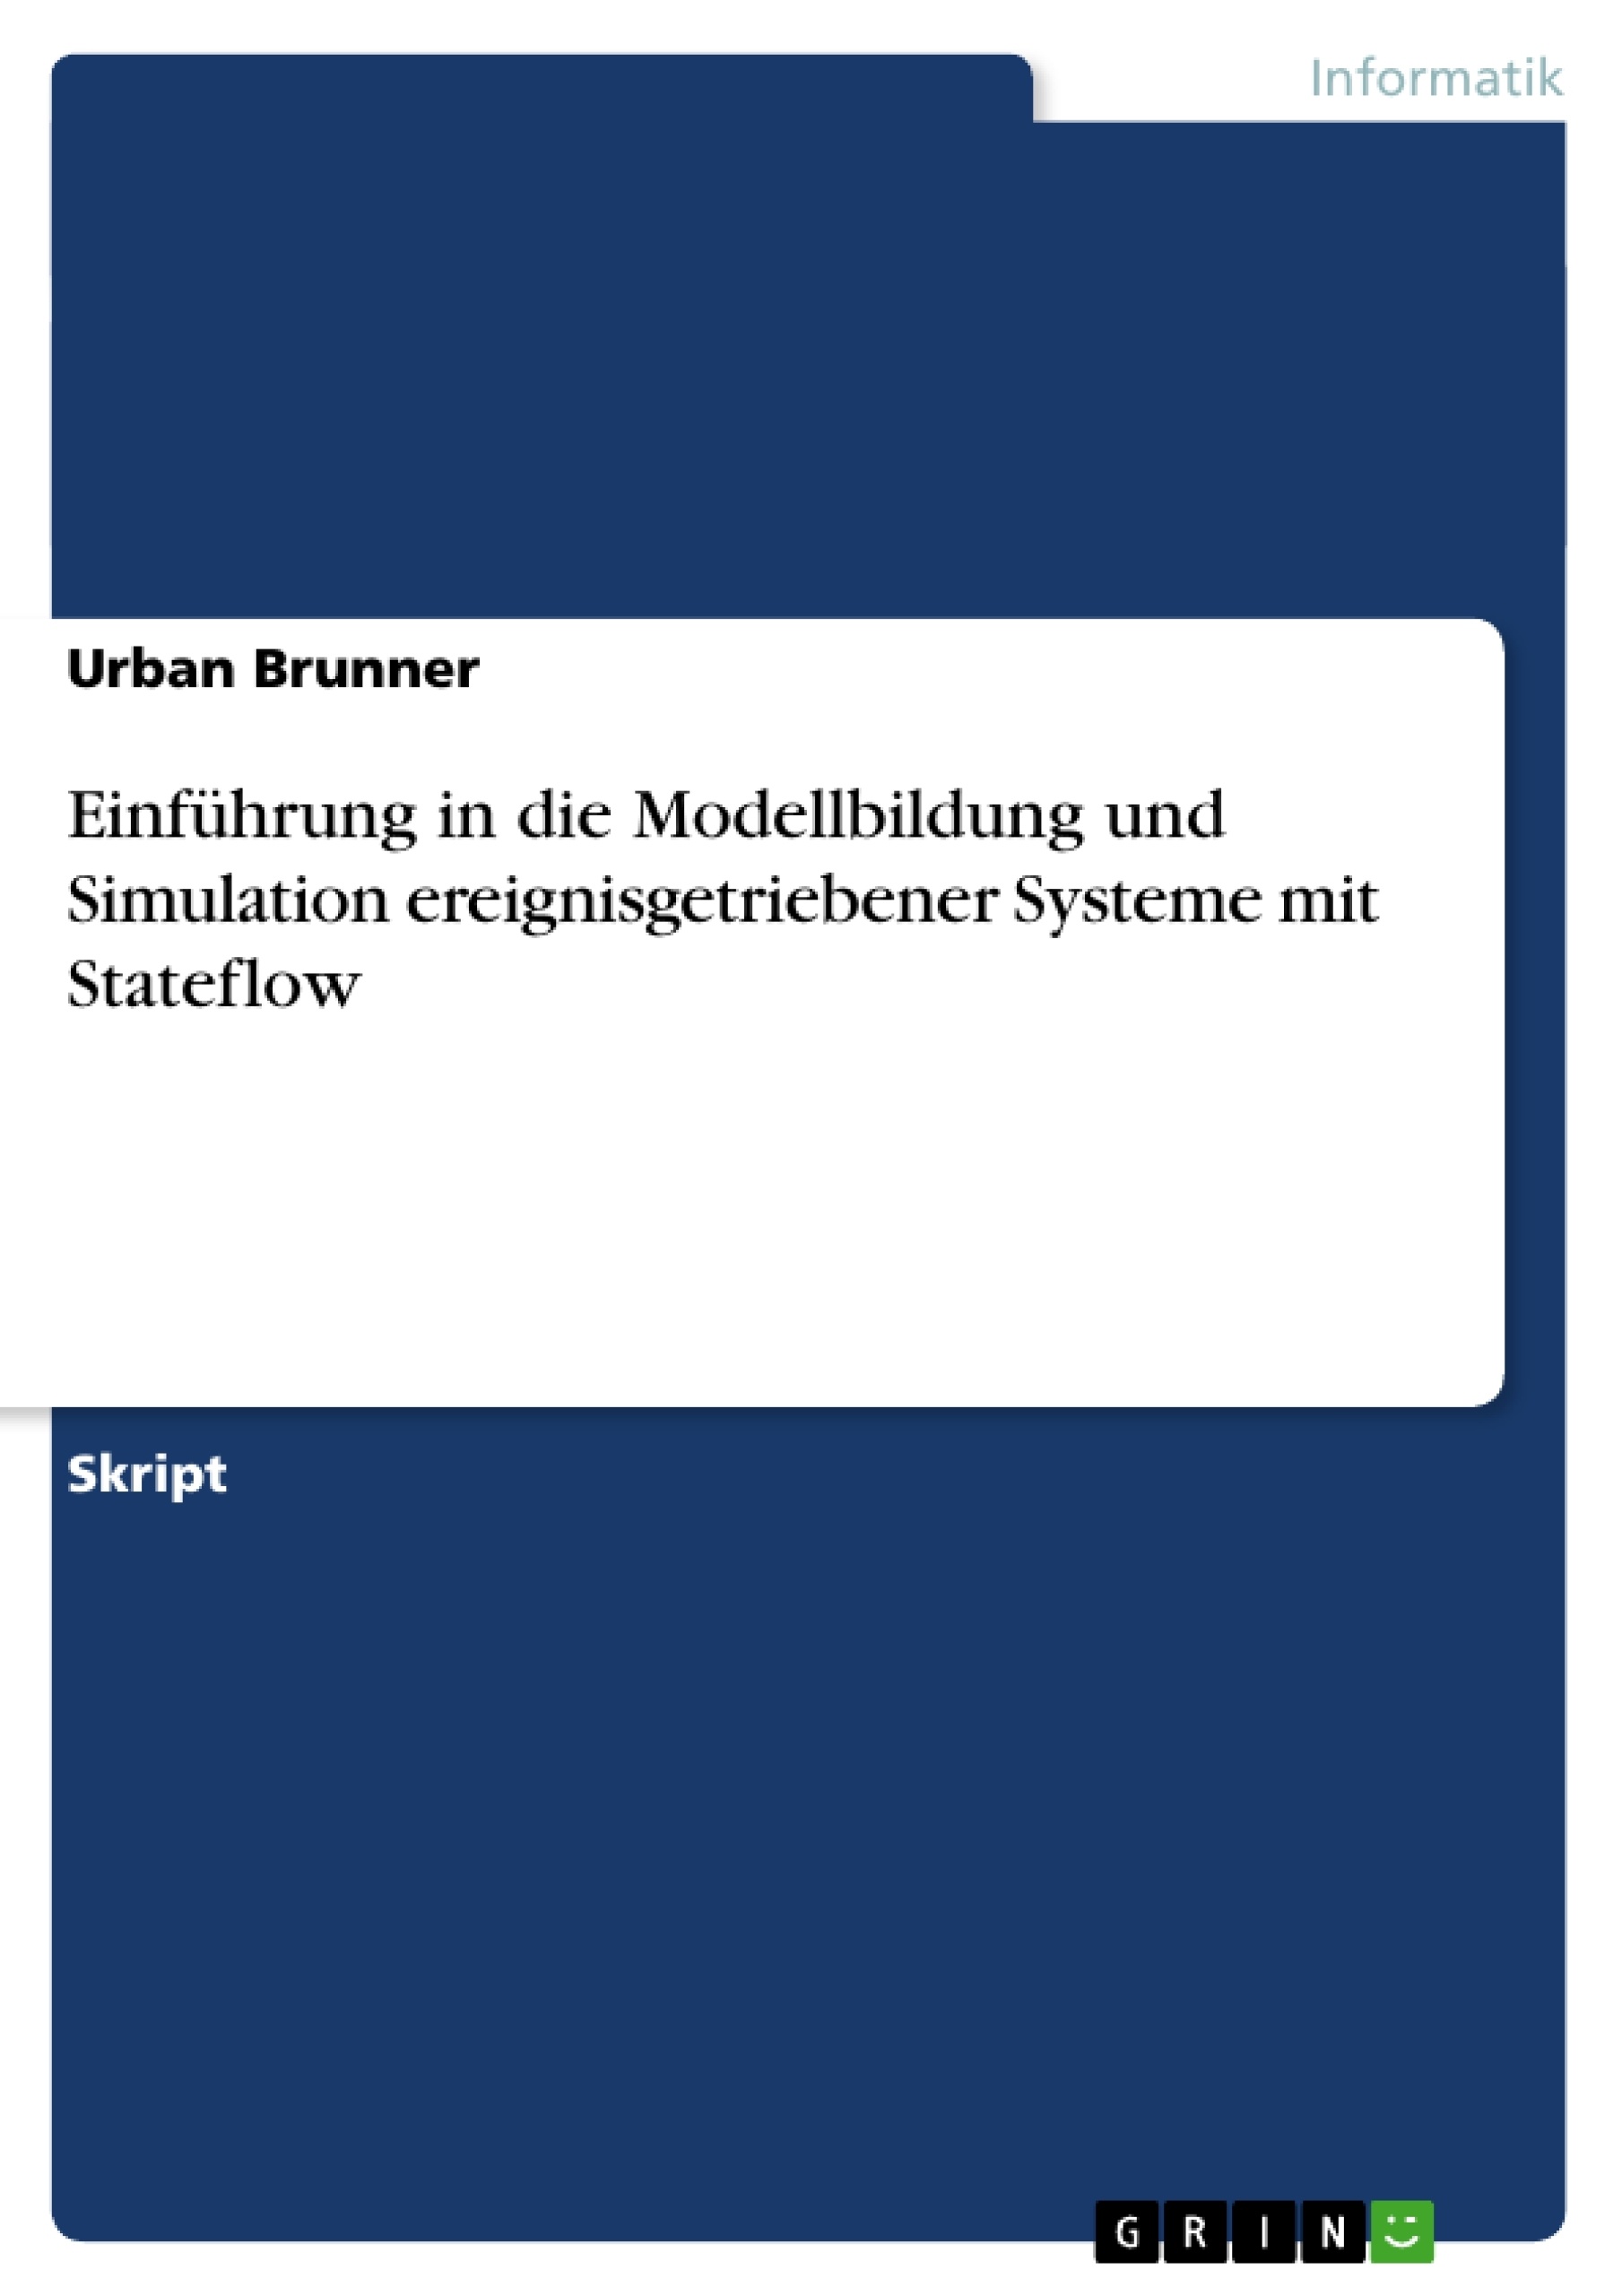 Titre: Einführung in die Modellbildung und Simulation ereignisgetriebener Systeme mit Stateflow